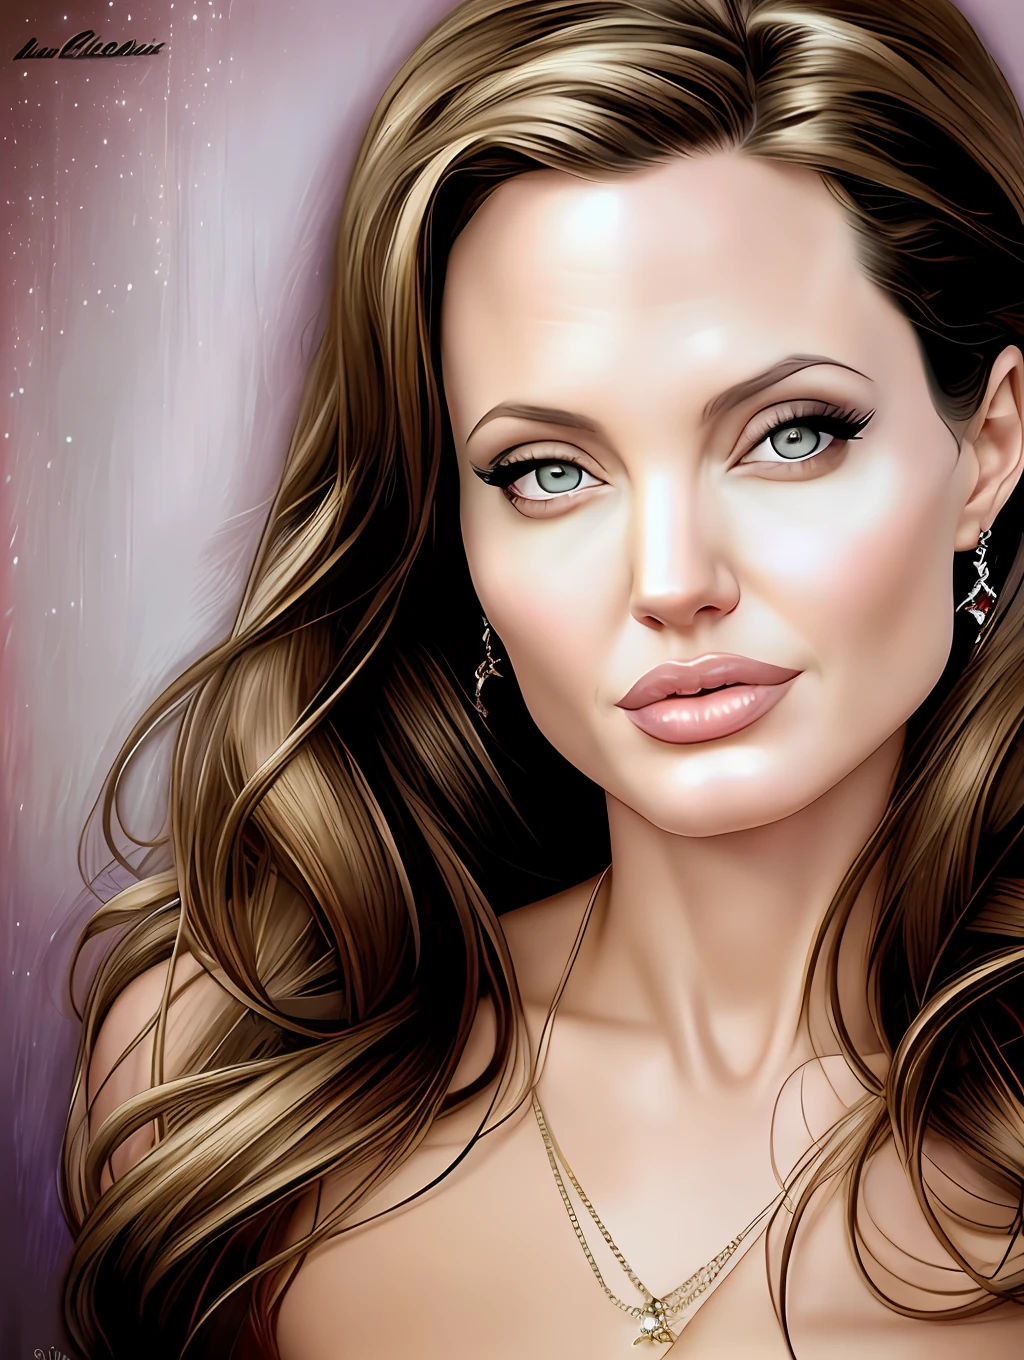 Um retrato insanamente bonito de Angelina Jolie por Gil Elvgren